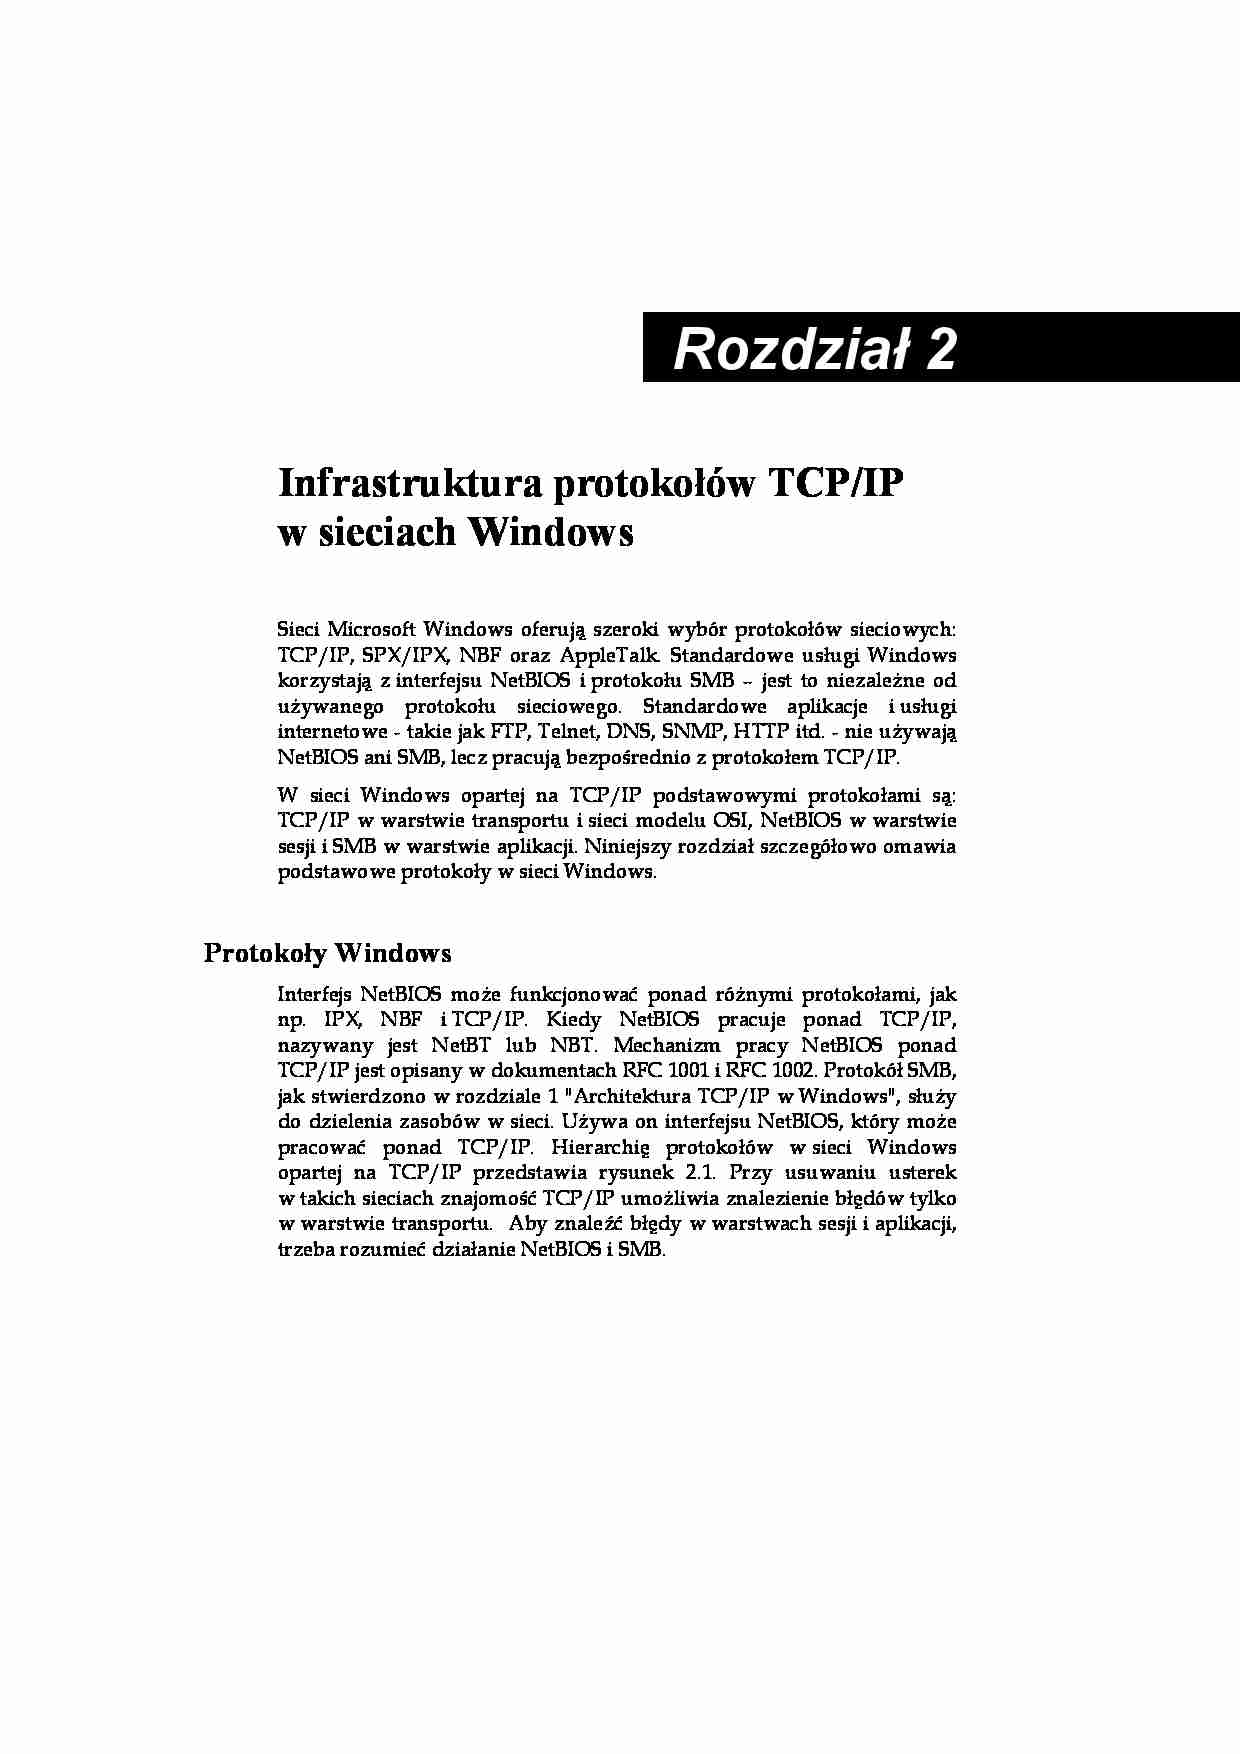 Architektura TCP IP w Windows 2 - strona 1